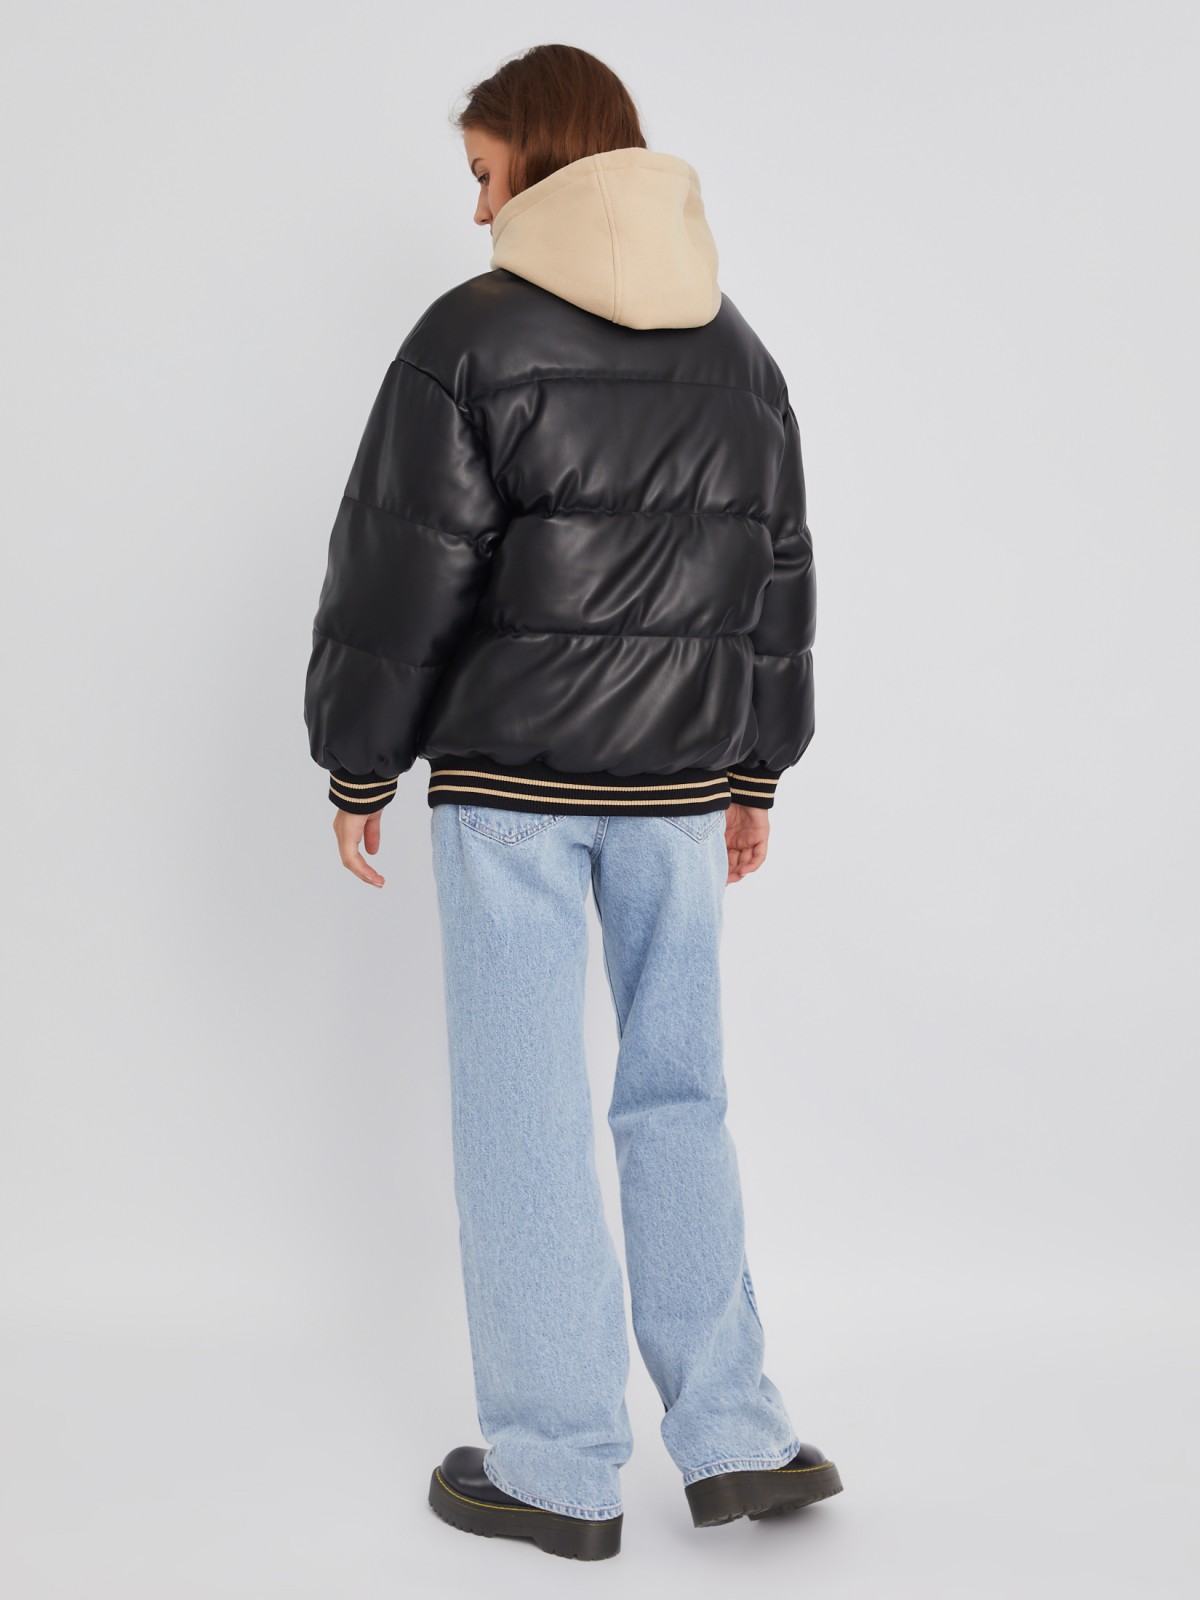 Тёплая куртка-бомбер из экокожи с воротником-стойкой и съёмным трикотажным капюшоном zolla 02334510L194, цвет черный, размер XS - фото 6